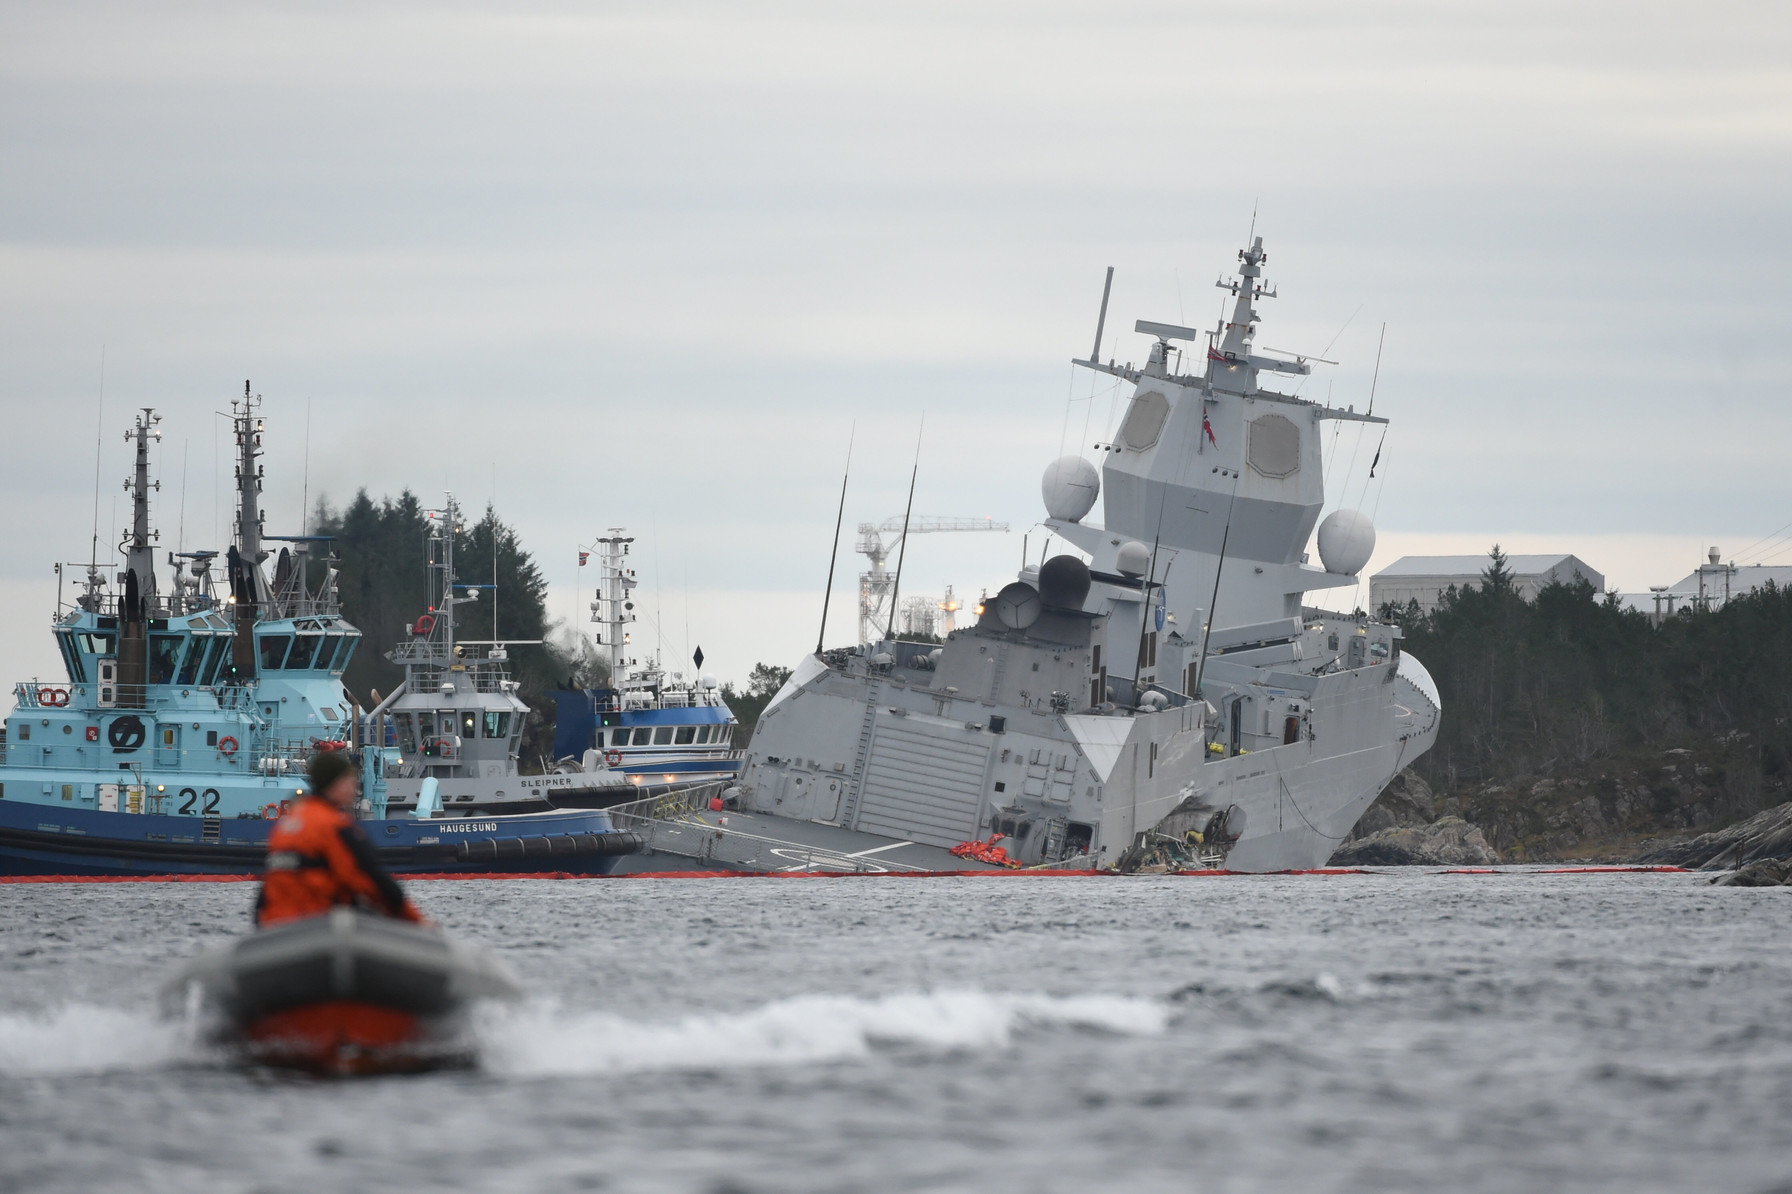 Norvegia, collisione tra una fregata e una petroliera in un fiordo: la nave rischia di affondare